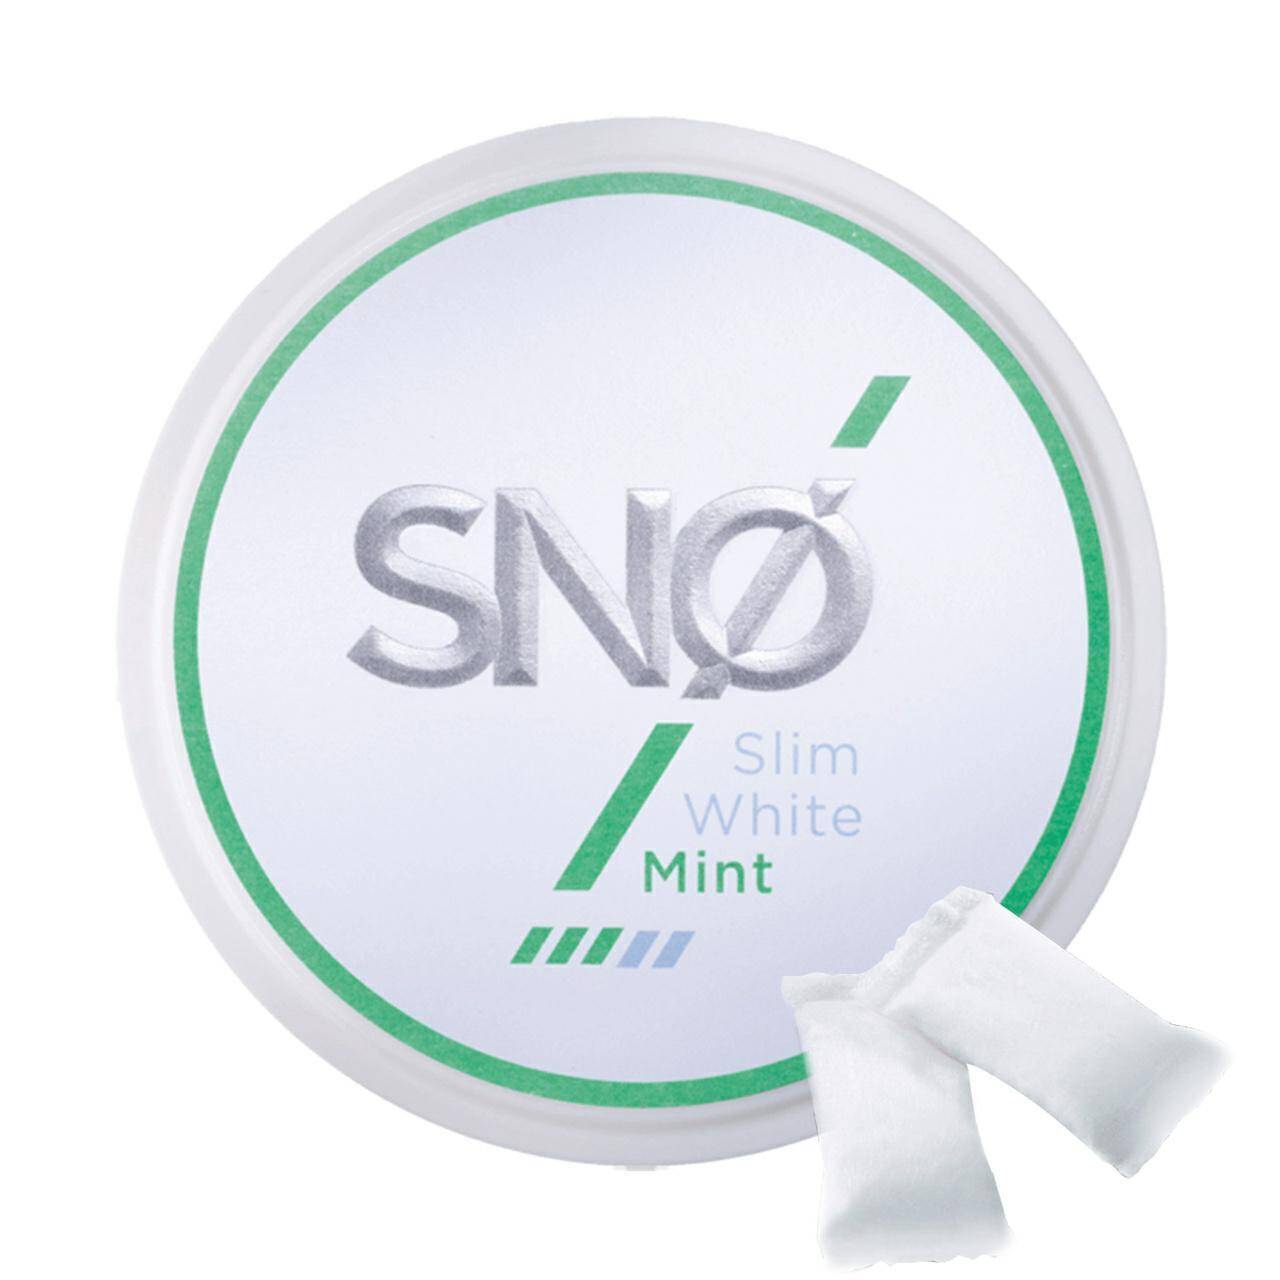 Saszetki nikotynowe SNO - Mint 12mg/g